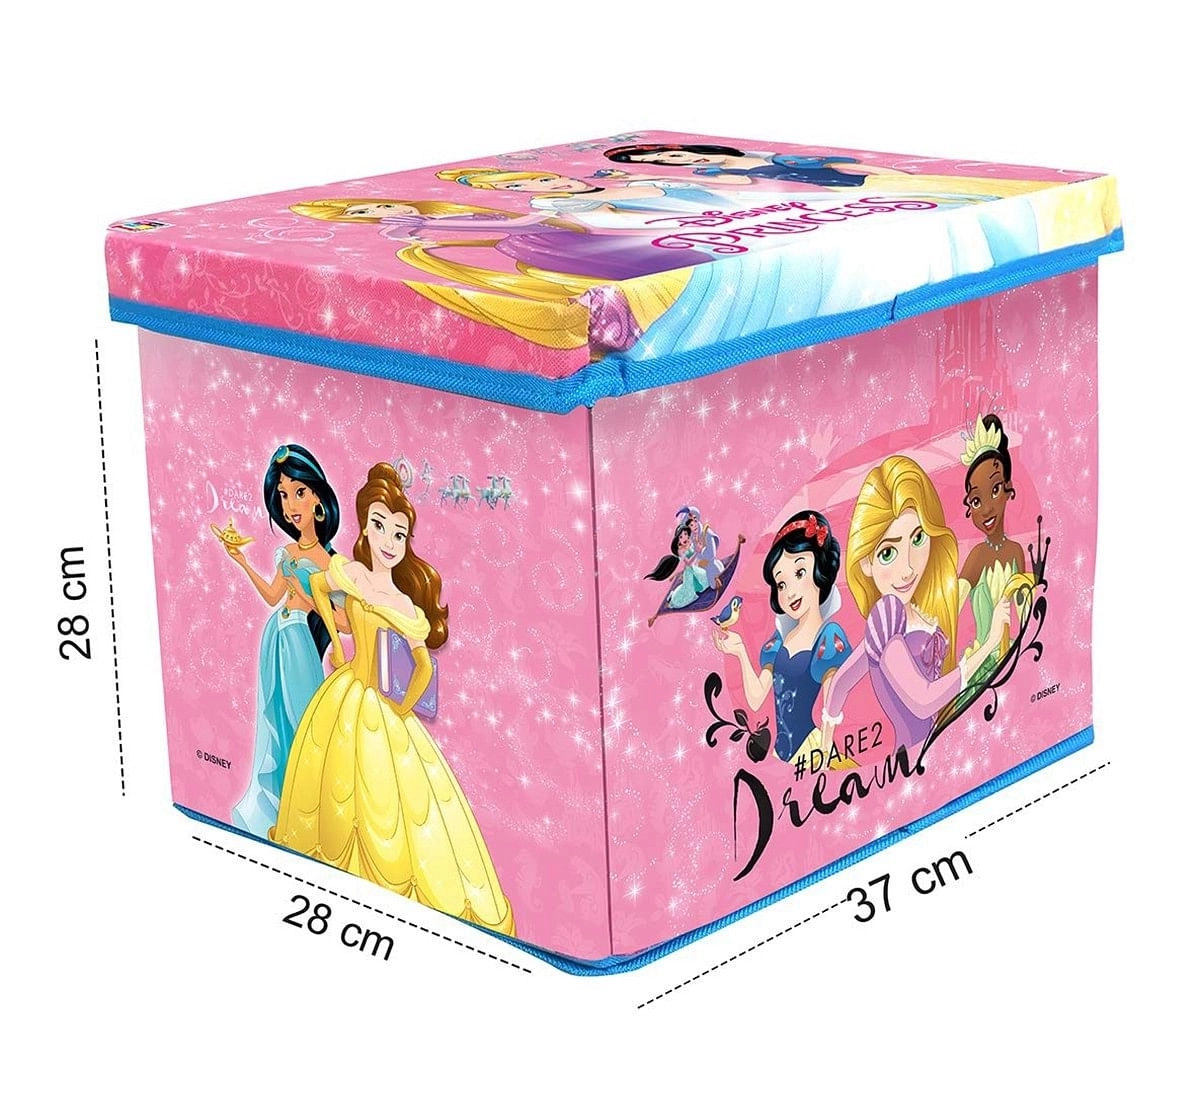 Disney Princess Toy Storage Box for Kids age 3Y+ 